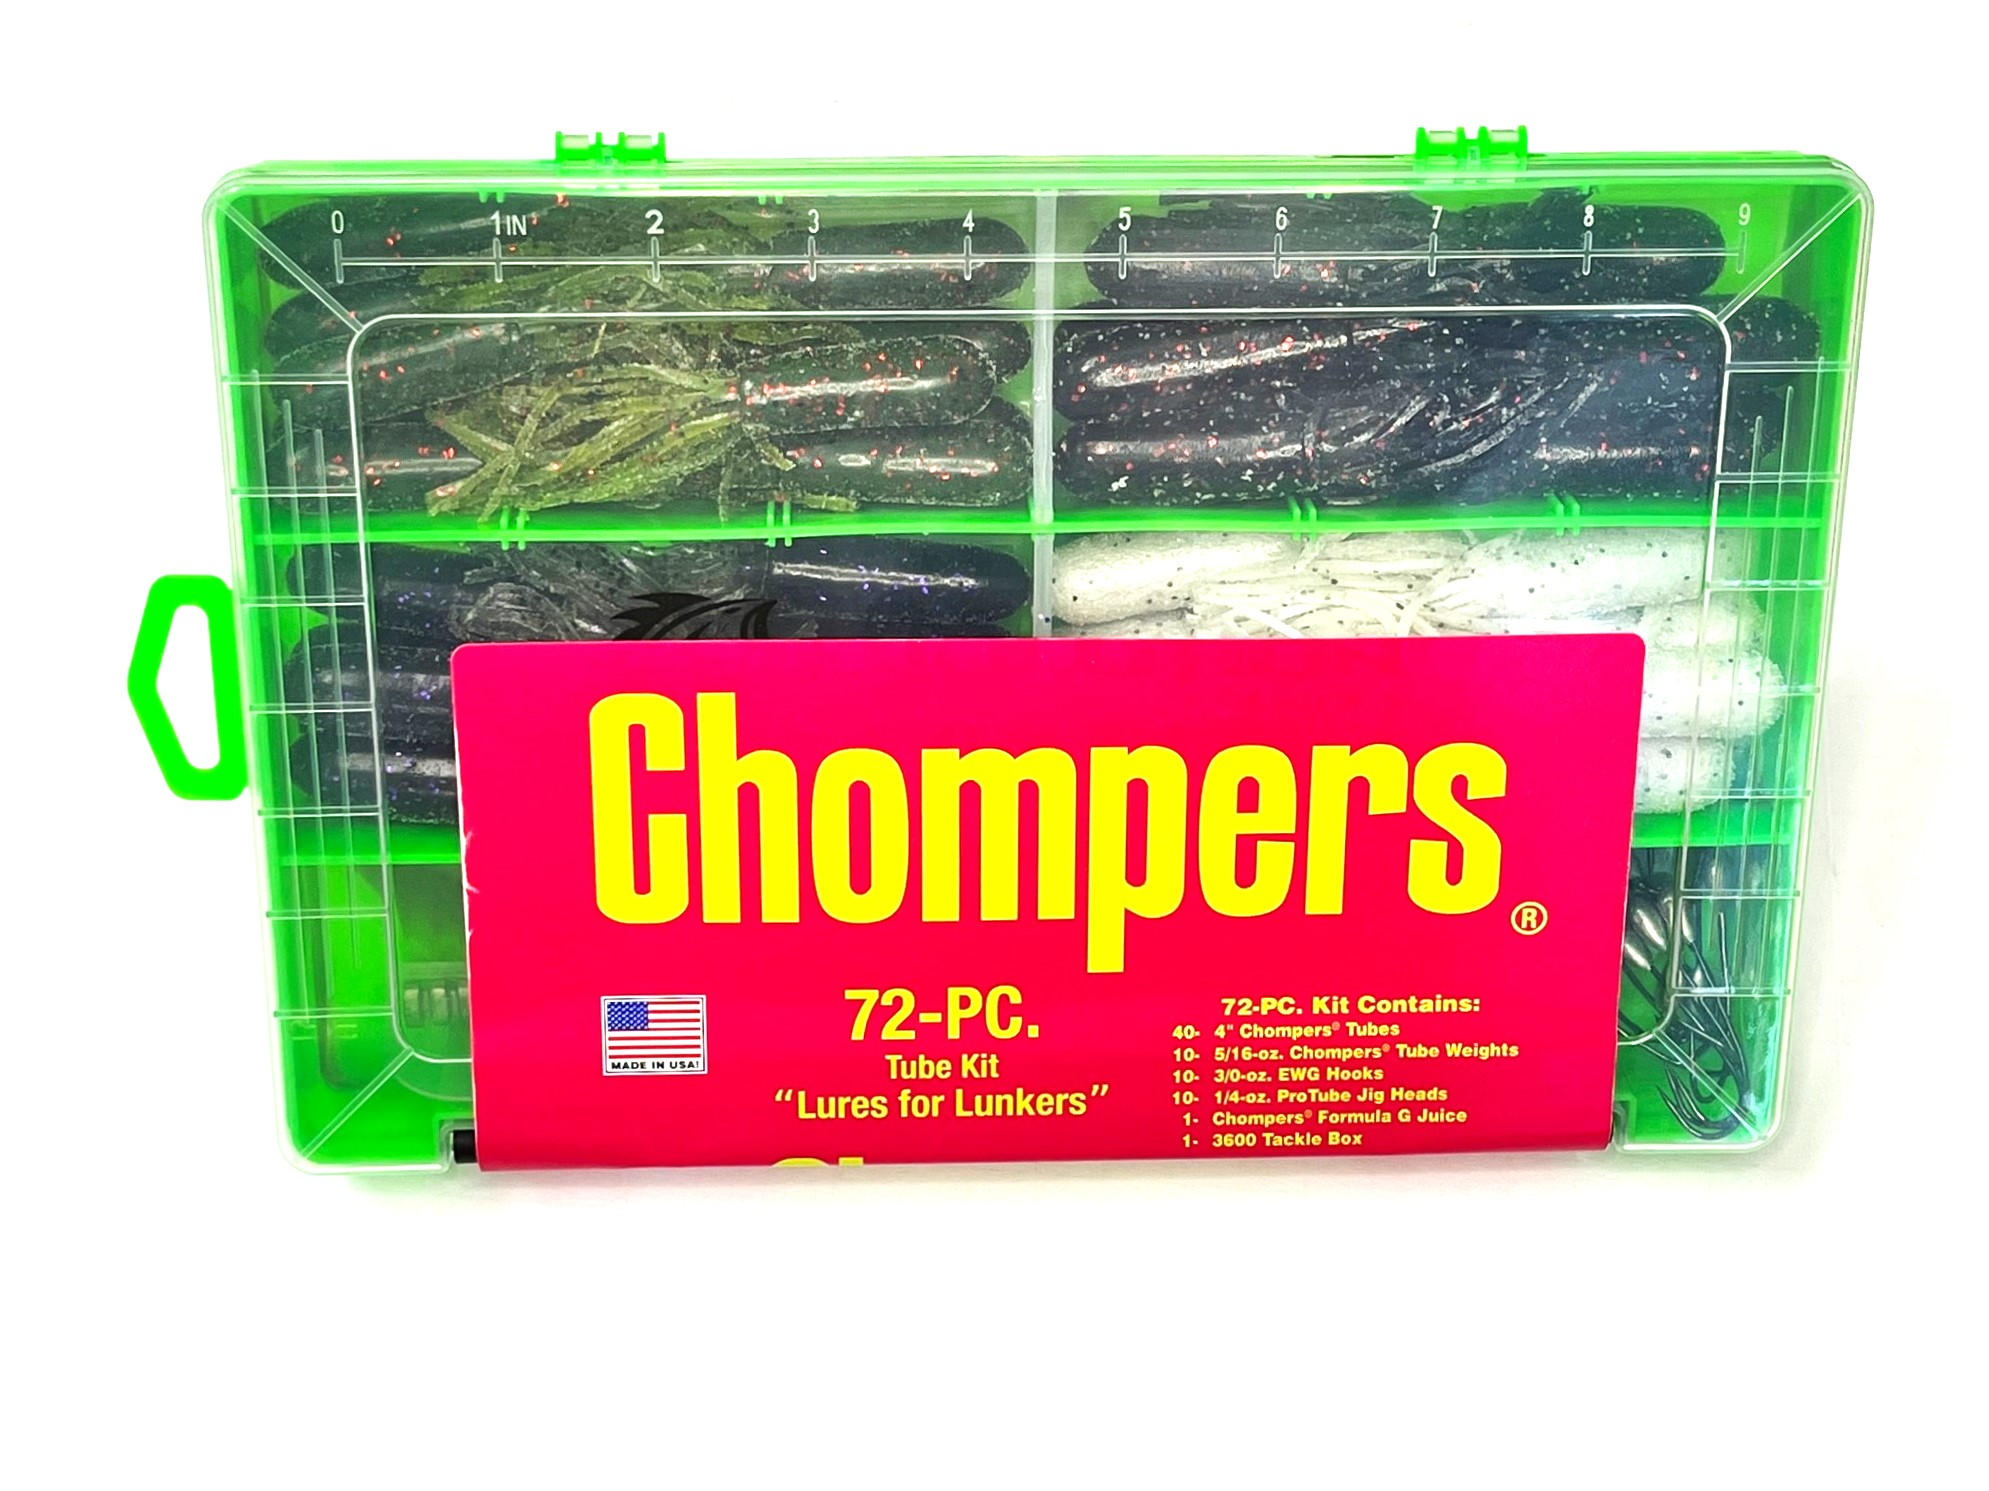 NEW!!! Chompers Tube Kit - 72 pcs